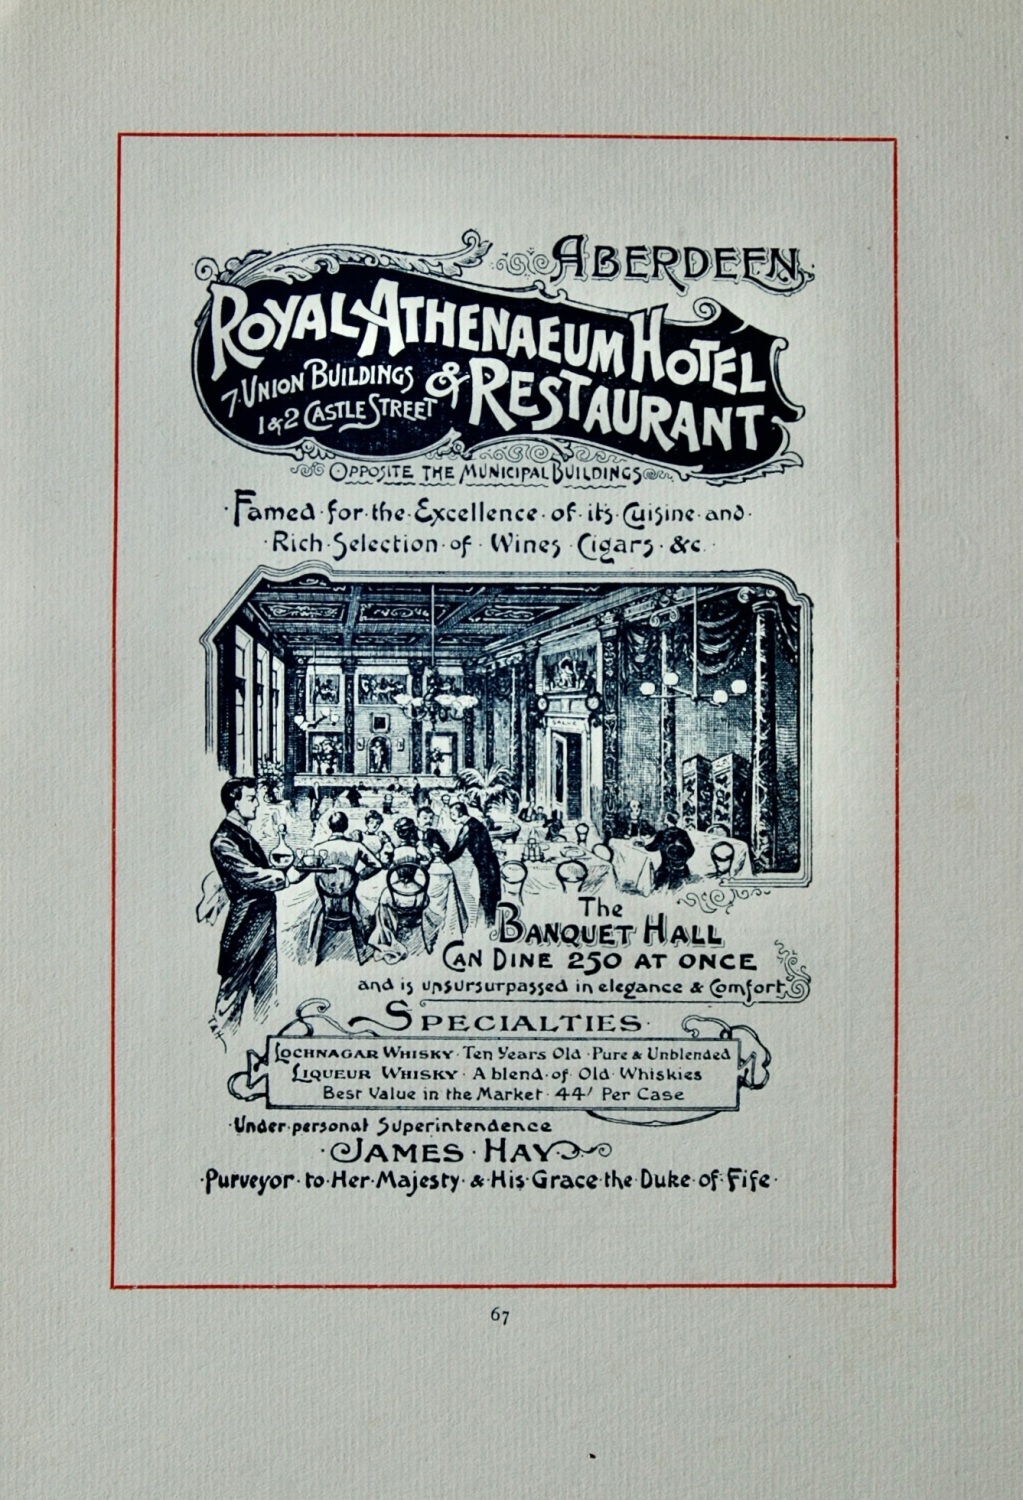 Royal Athenaeum Hotel & Restaurant, 7 Union Buildings 1 & 2 Castle Street, 